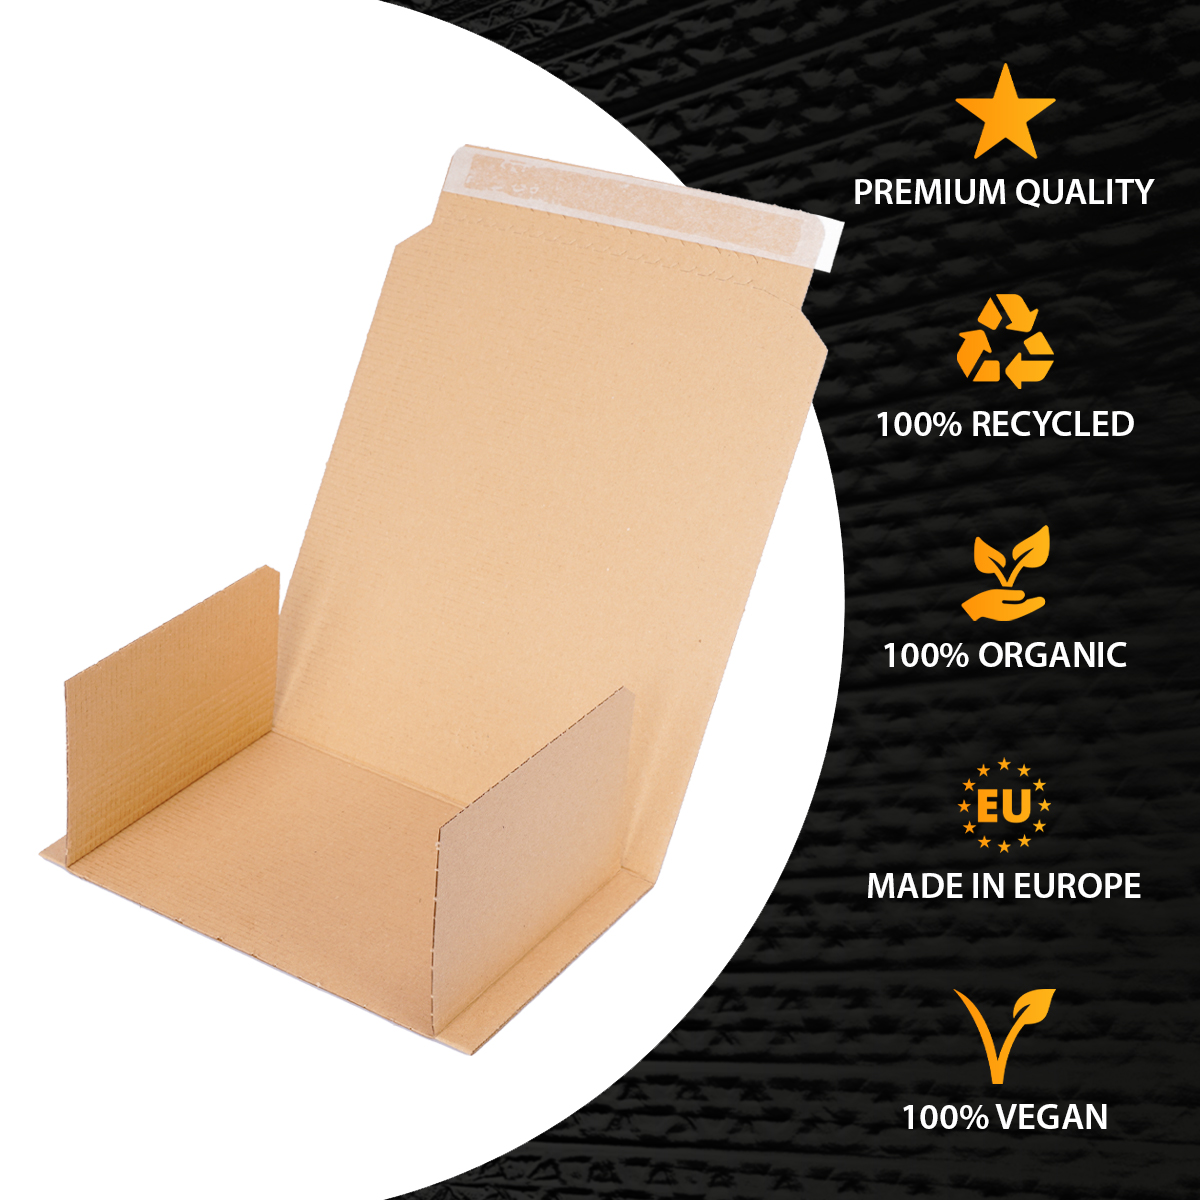 Buchverpackung 600x400x10-85 mm Wickelverpackung aus Pappe DIN A2 braun - BV 60